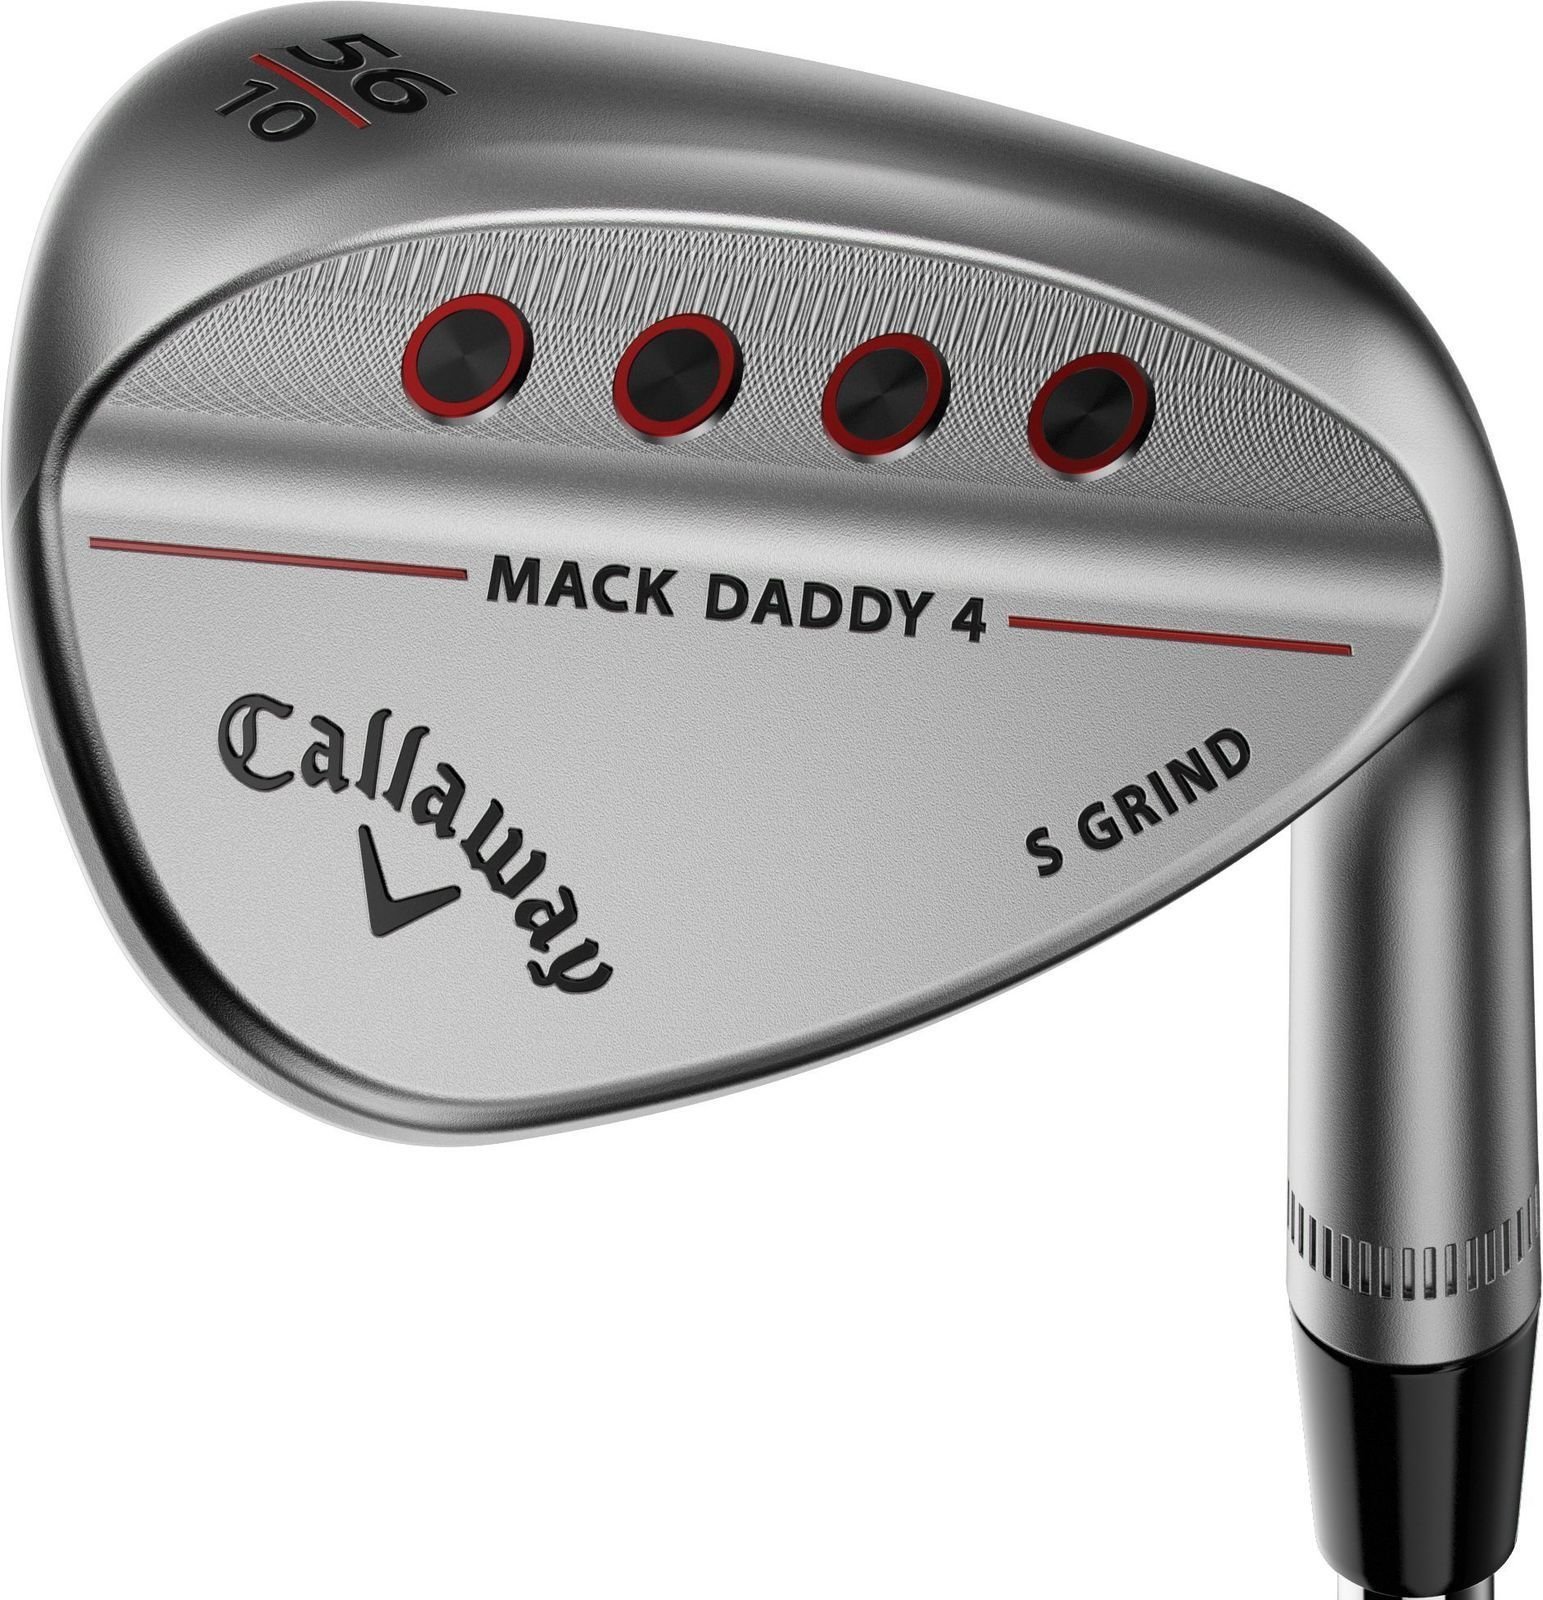 Λέσχες γκολφ - wedge Callaway Mack Daddy 4 Chrome Wedge 56-10 S-Grind Right Hand